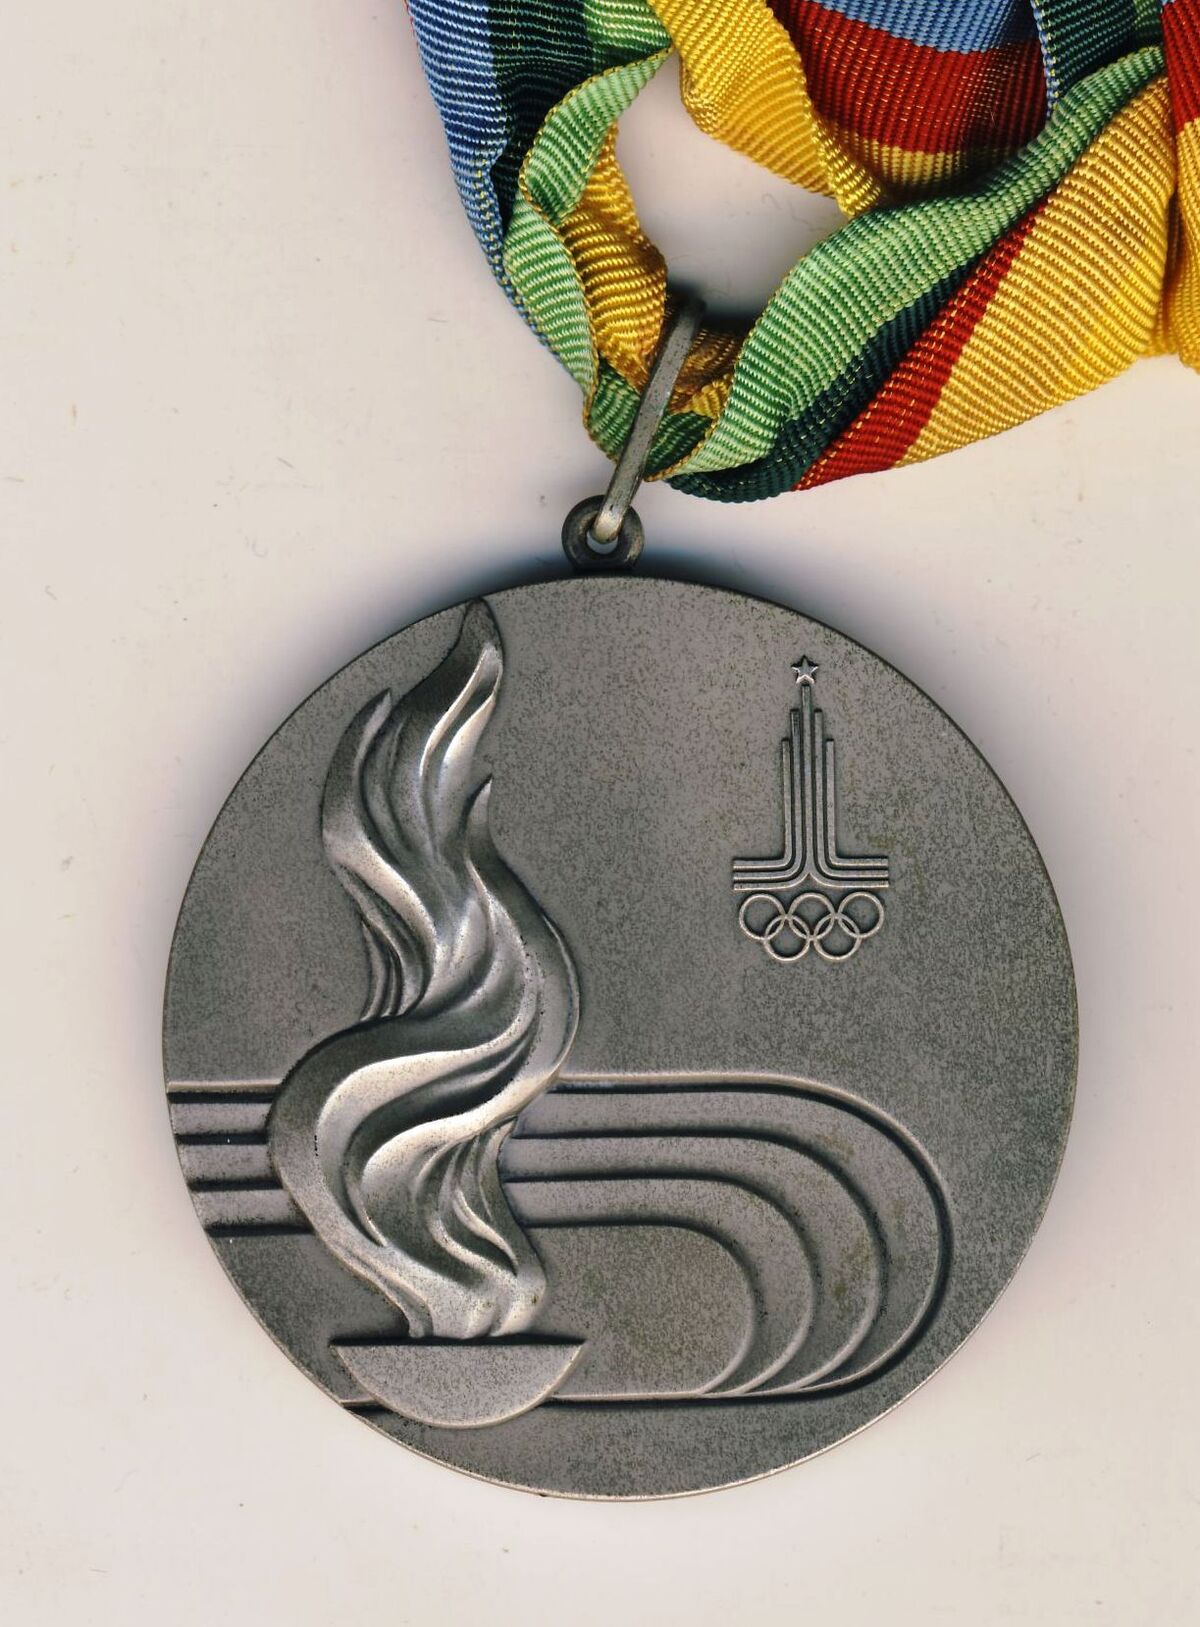 Beugrósból lett olimpiai ezüstérmes